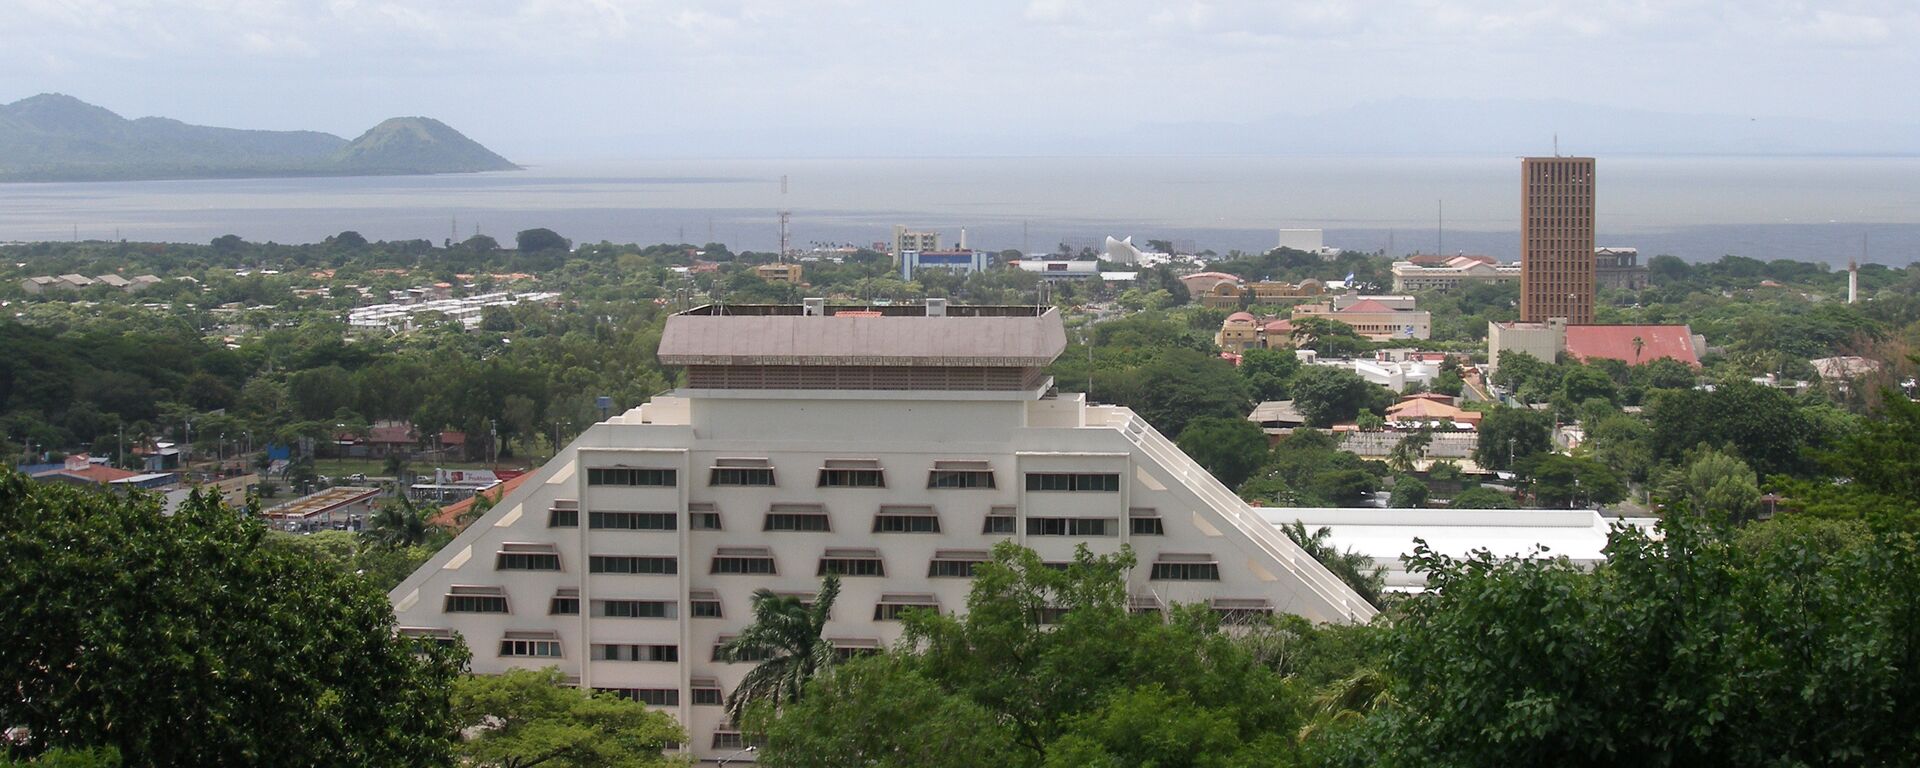 Capital de Nicaragua,  Managua - Sputnik Mundo, 1920, 06.08.2021